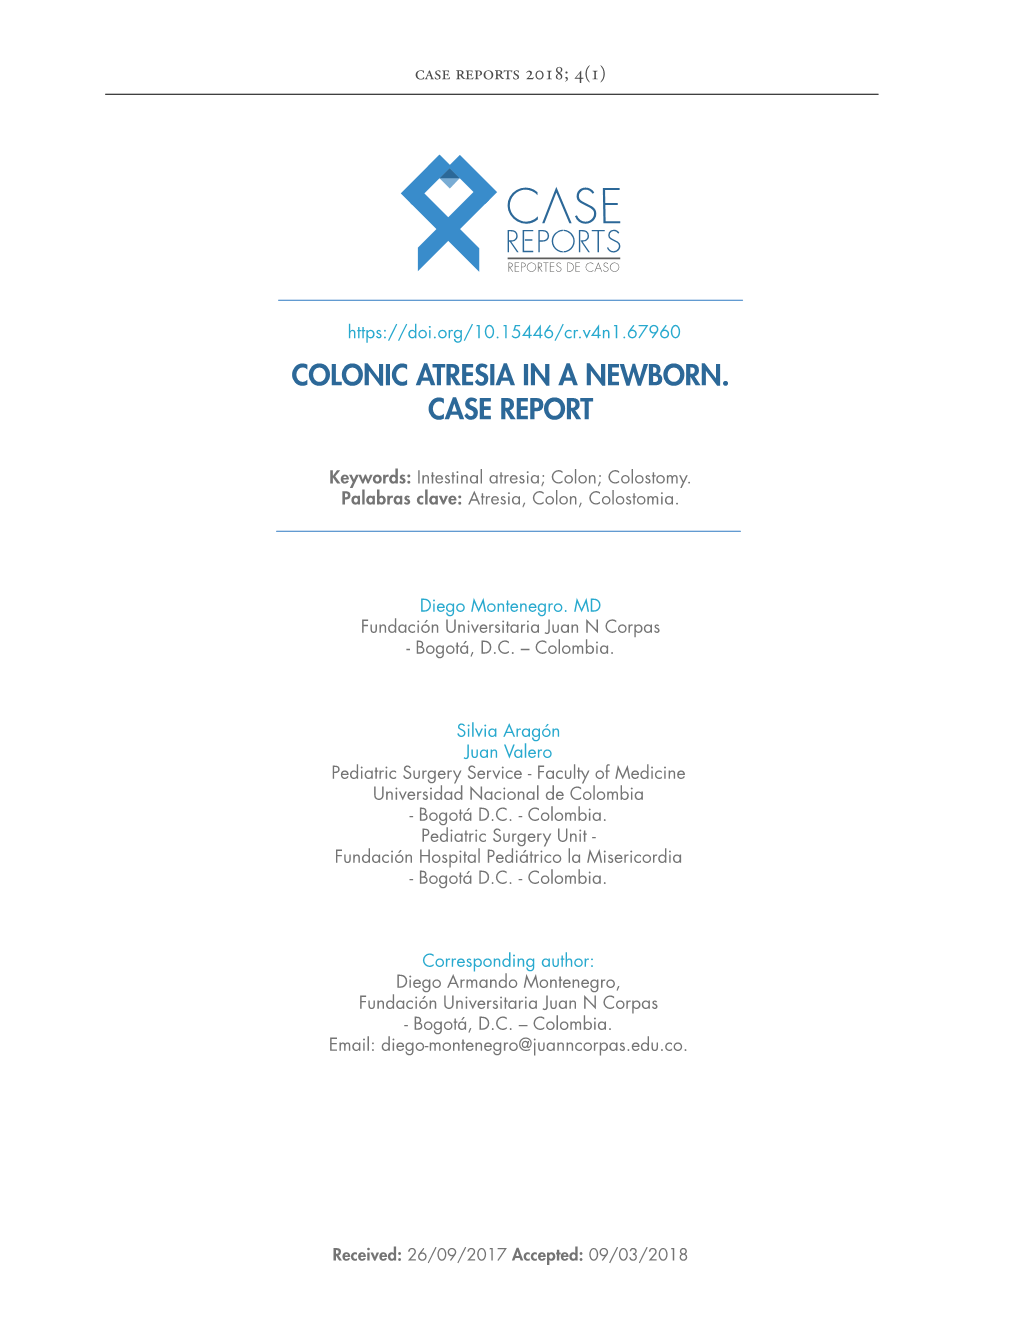 Colonic Atresia in a Newborn. Case Report